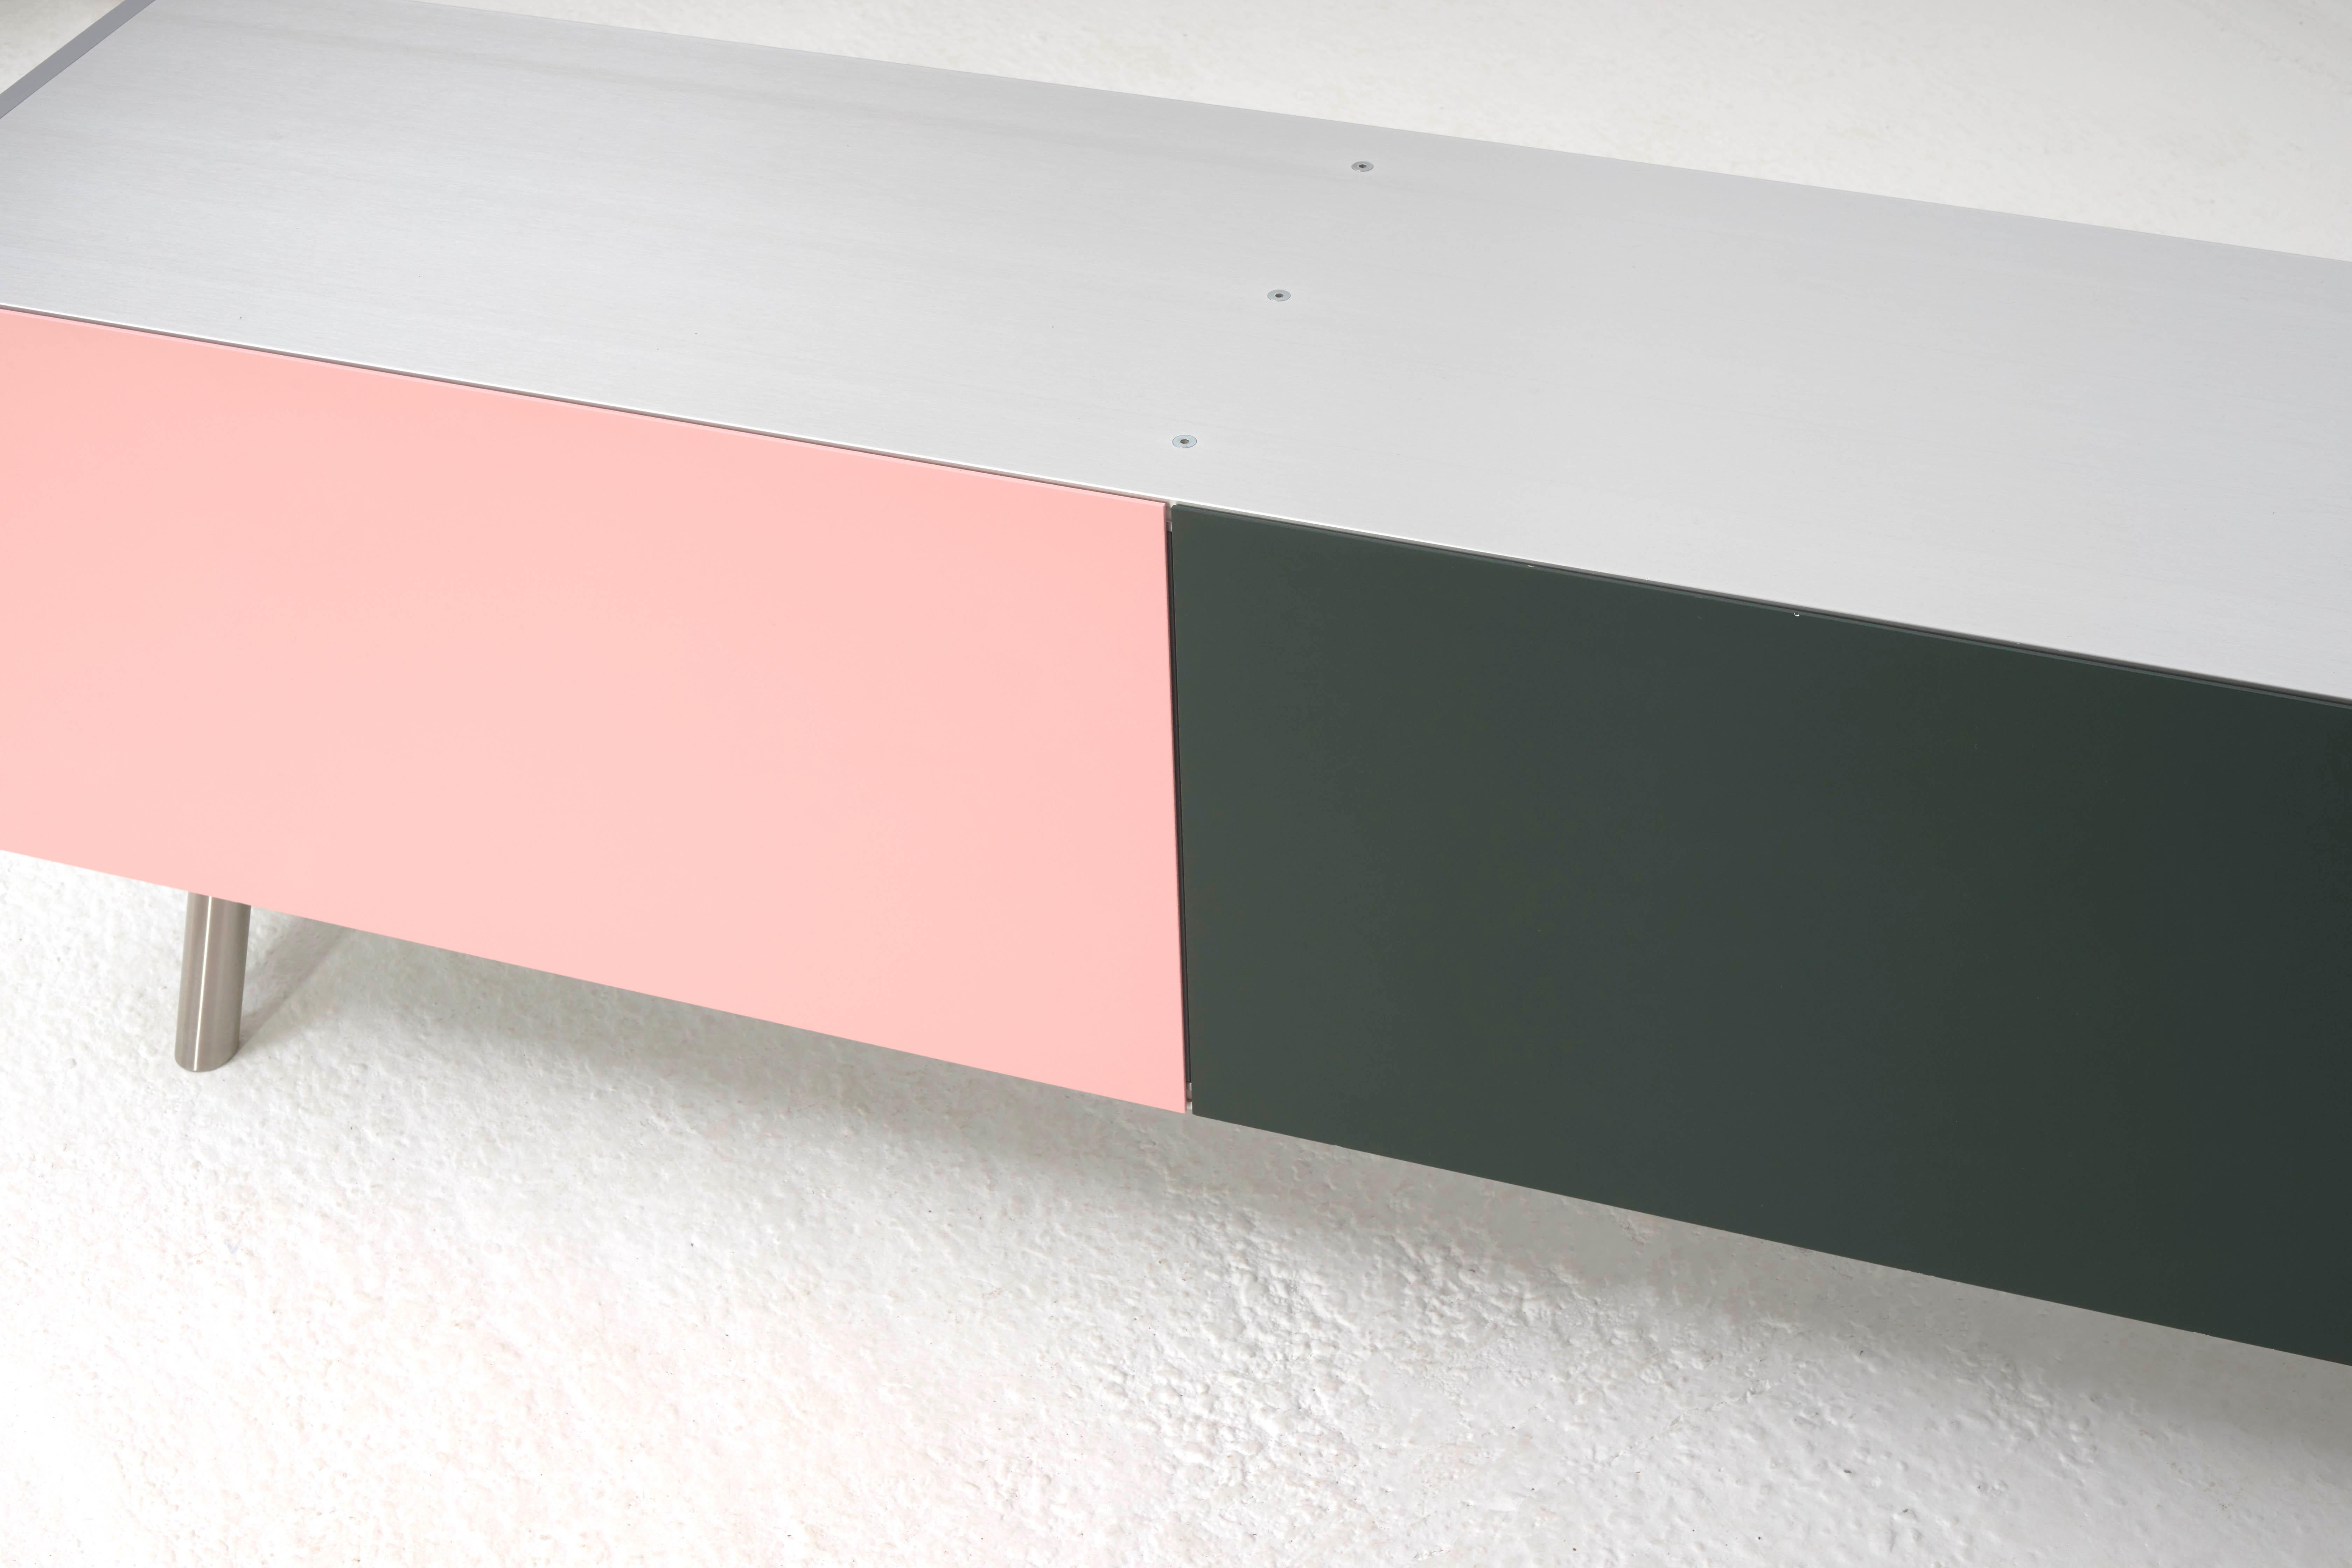 Post-Modern Vitra Kast Cabinet Sideboard in Pink and Dark Green by Maarten van Severen